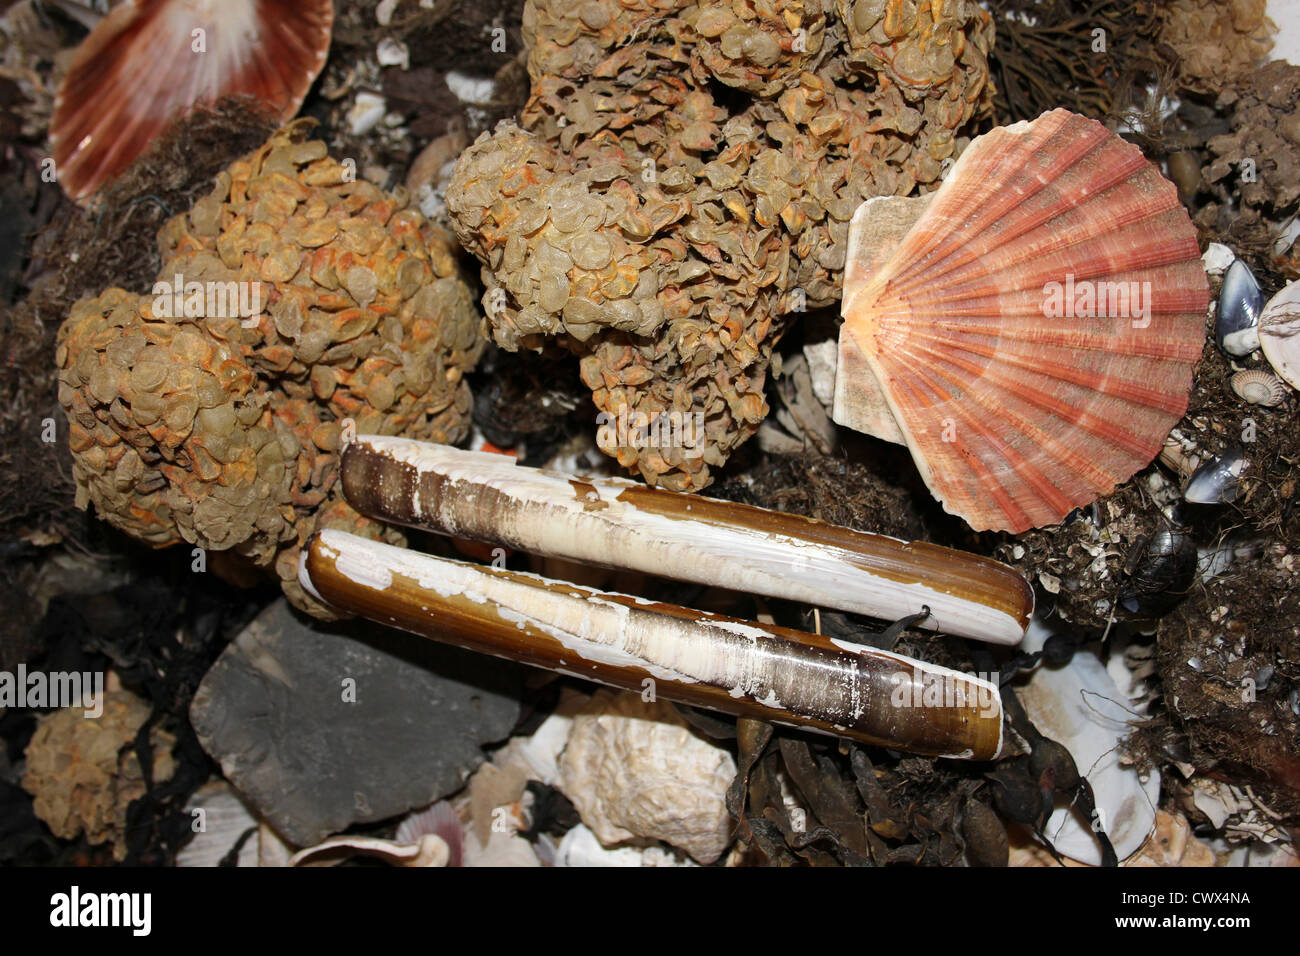 Seashore Strandline Collection Including Clam, Razor Shells, Scallop Shells and Sea Wash Balls Stock Photo